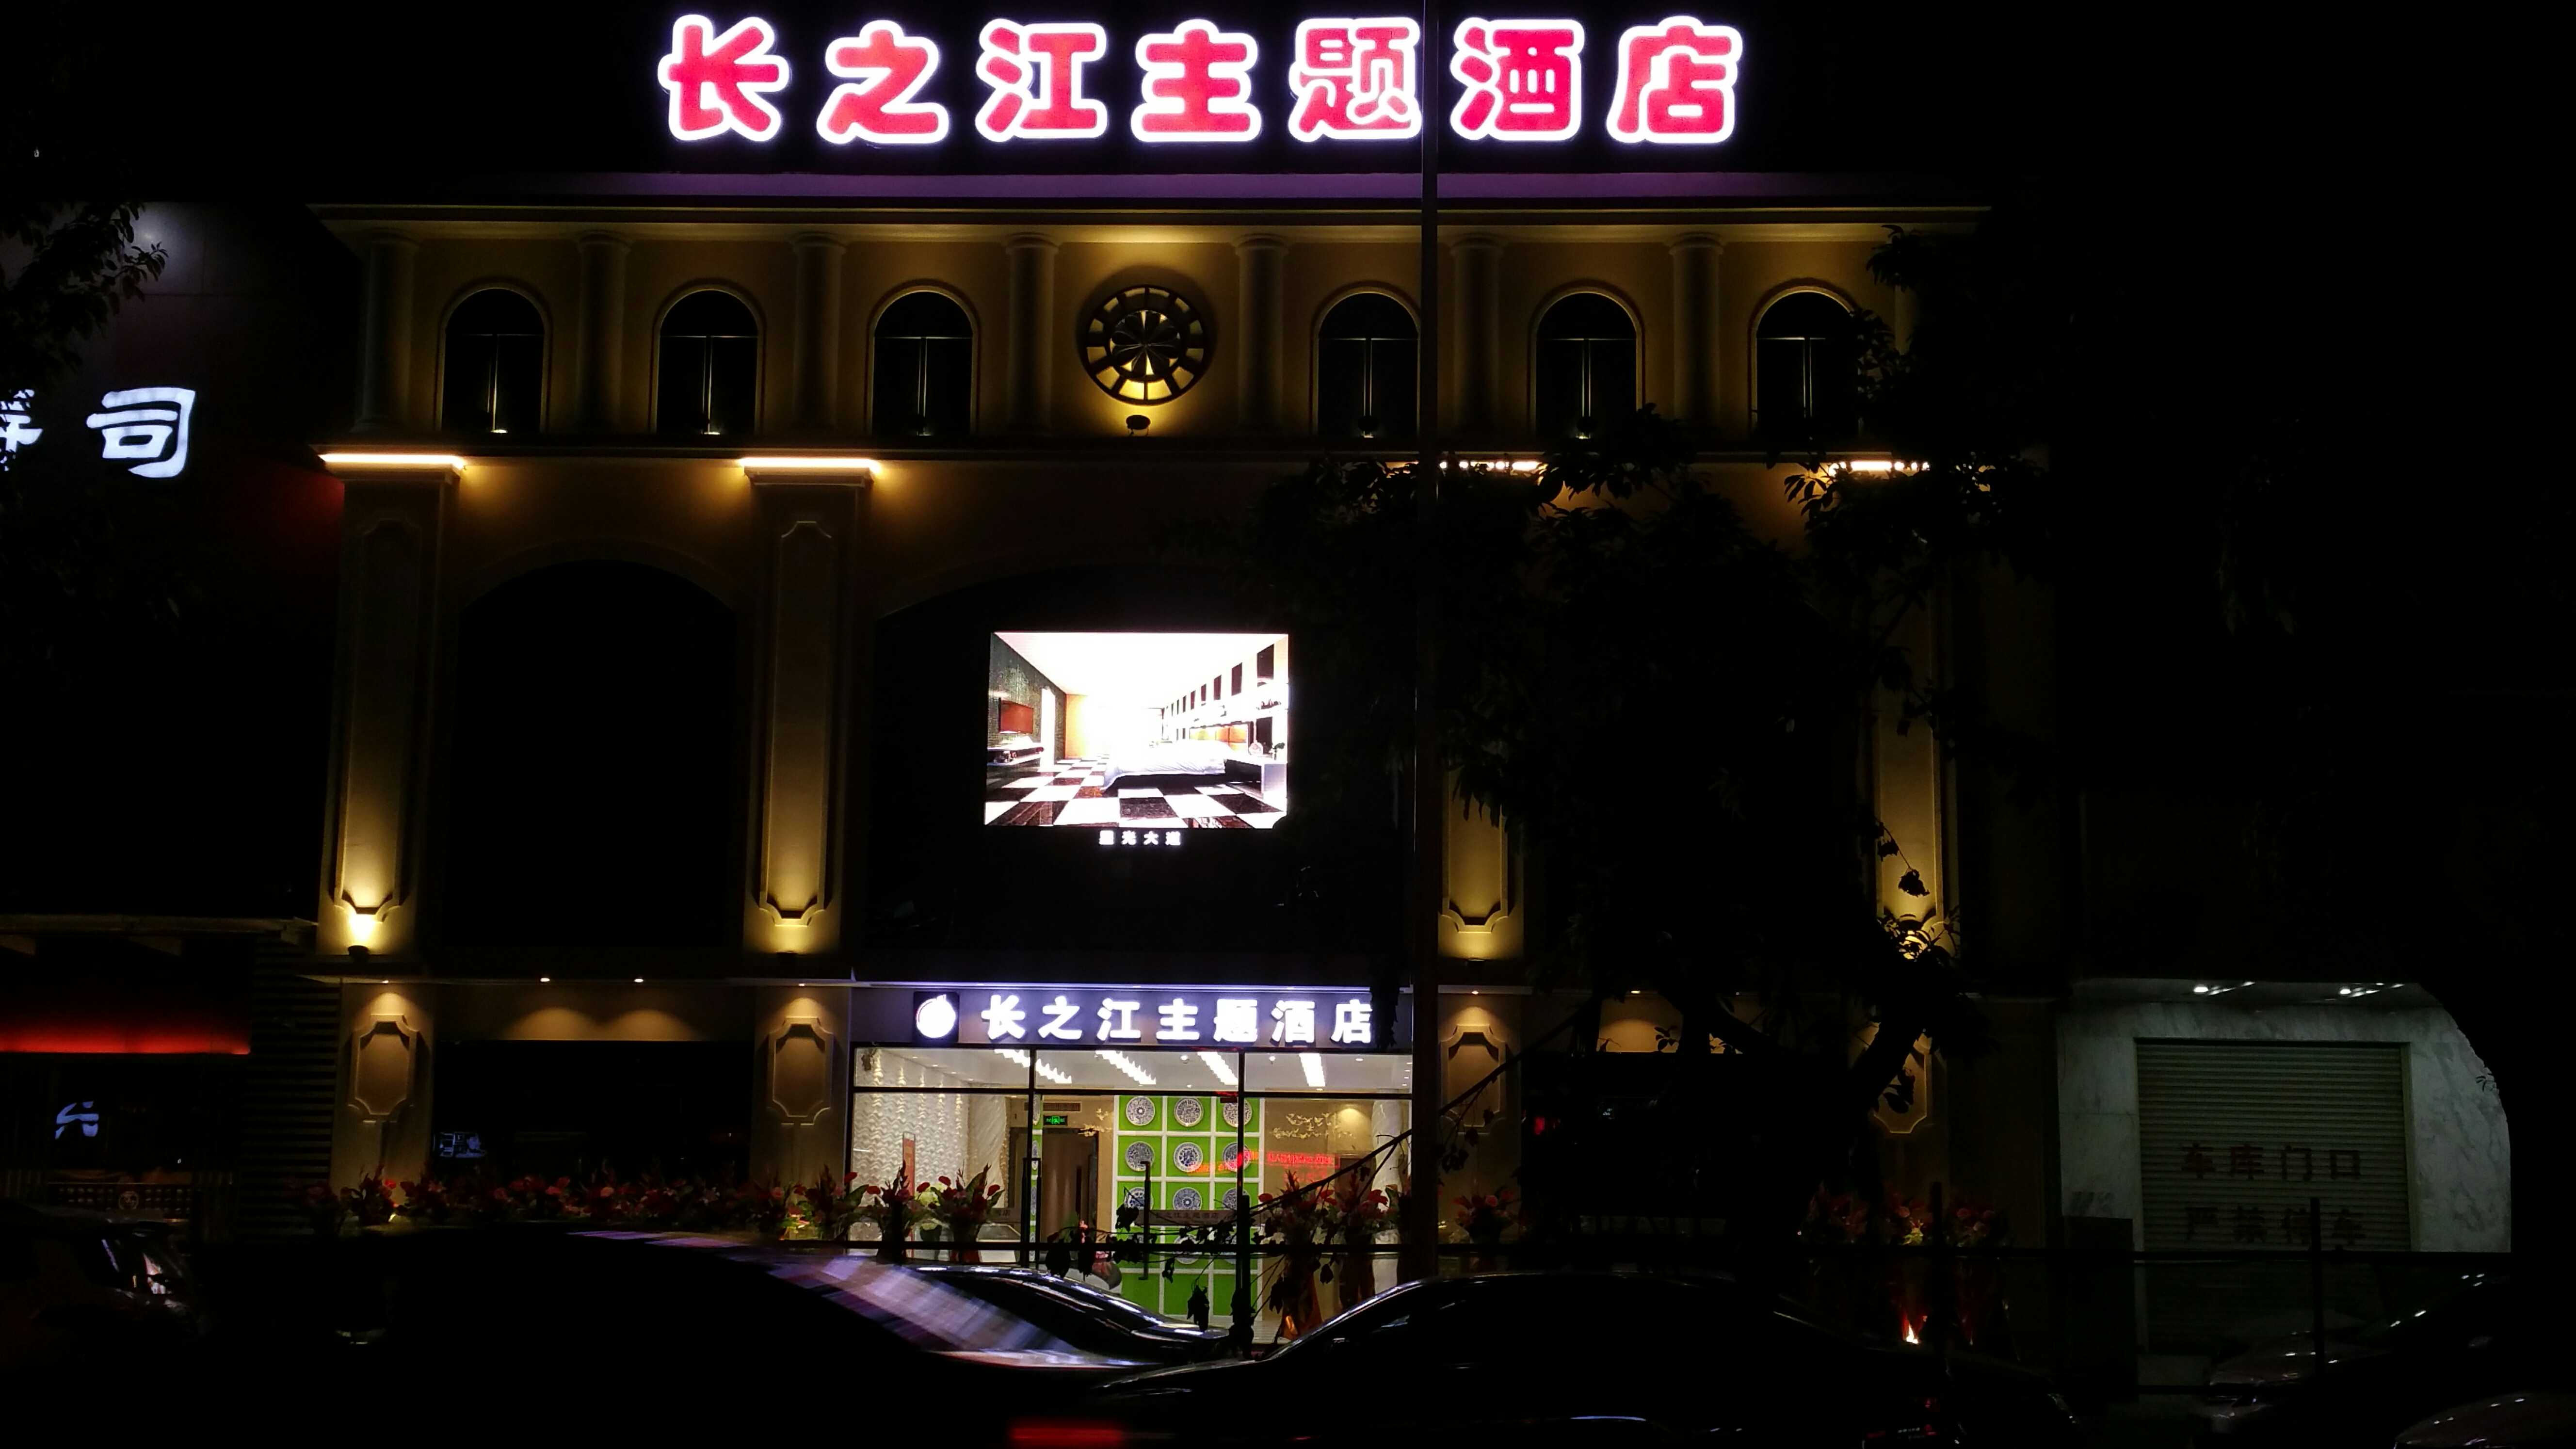 長之江酒店戶外P8全彩顯示屏、發光字招牌